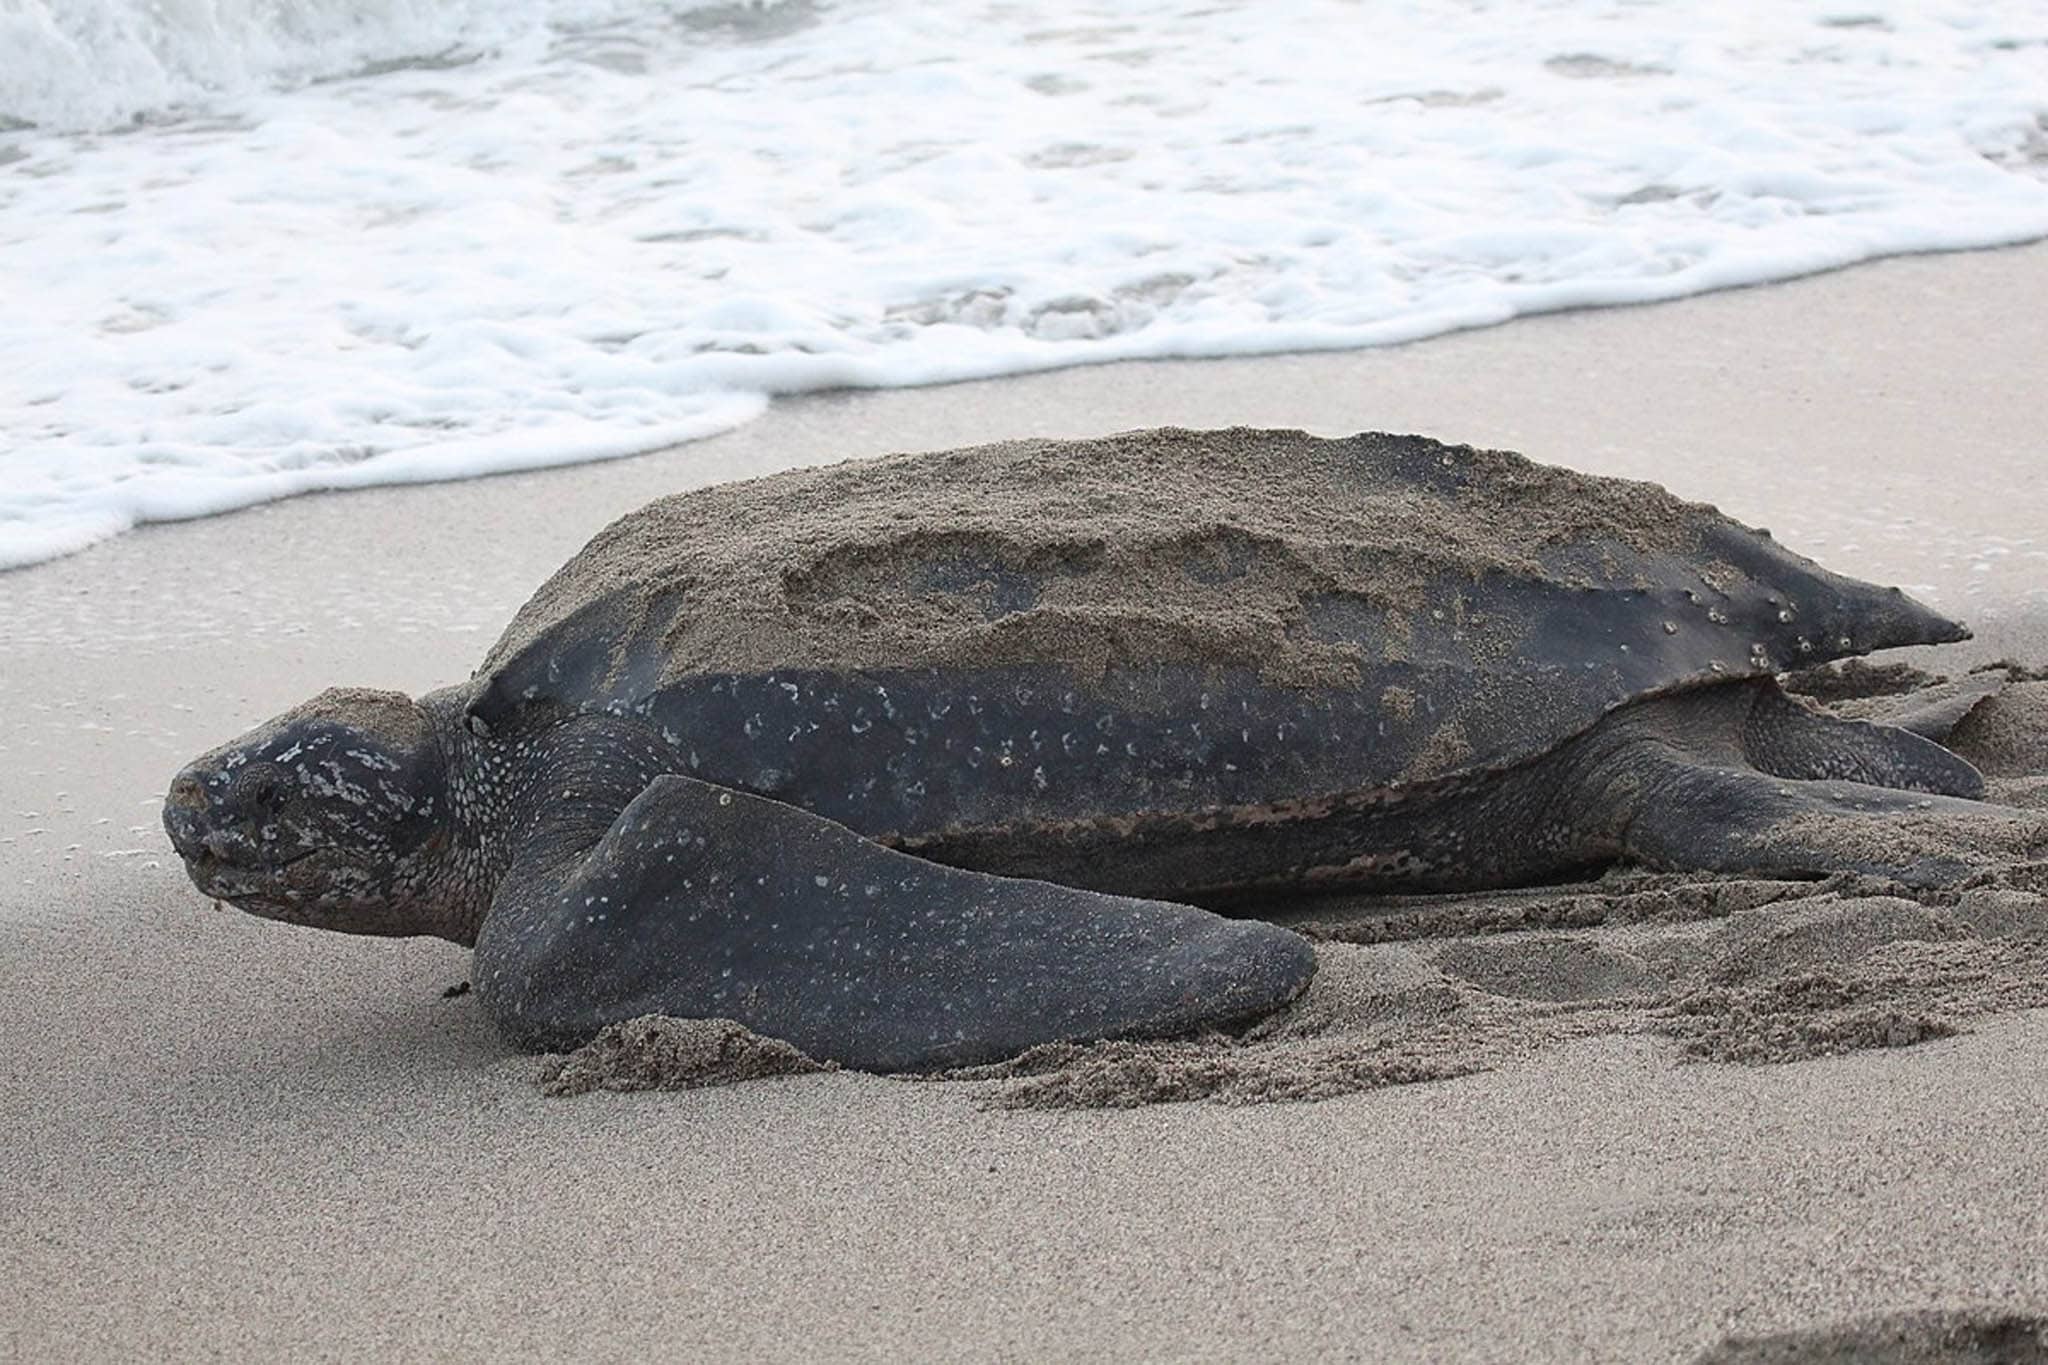 Leatherback sea turtle on sand